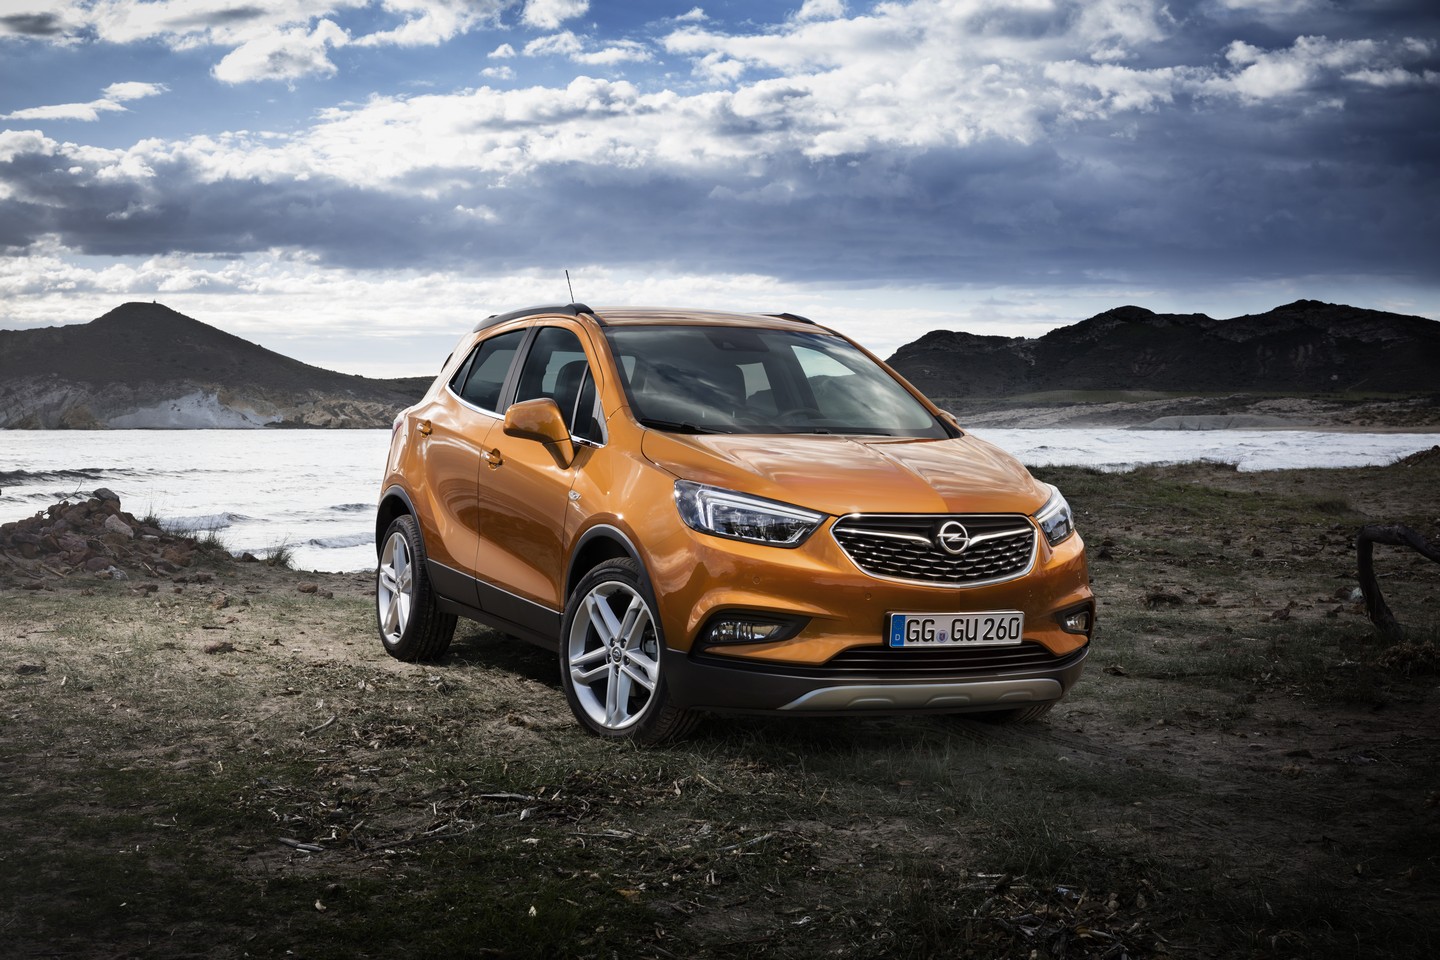 2016 Opel Mokka X lk Resim Galerisi